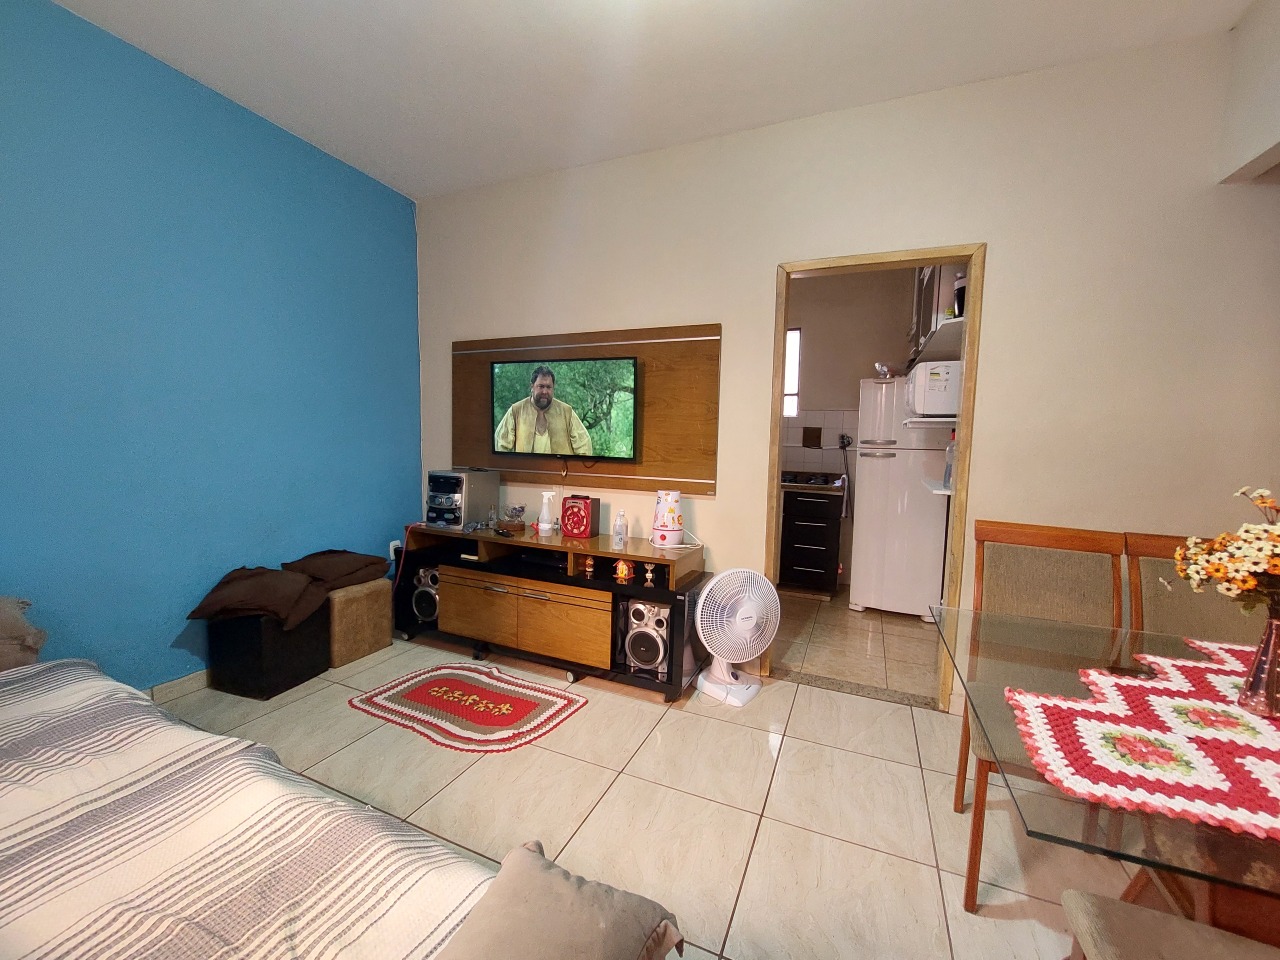 Casa em condomínio à venda no Itaipu: Casa em condomínio, 02 Quartos, Itaipu - Barreiro/MG